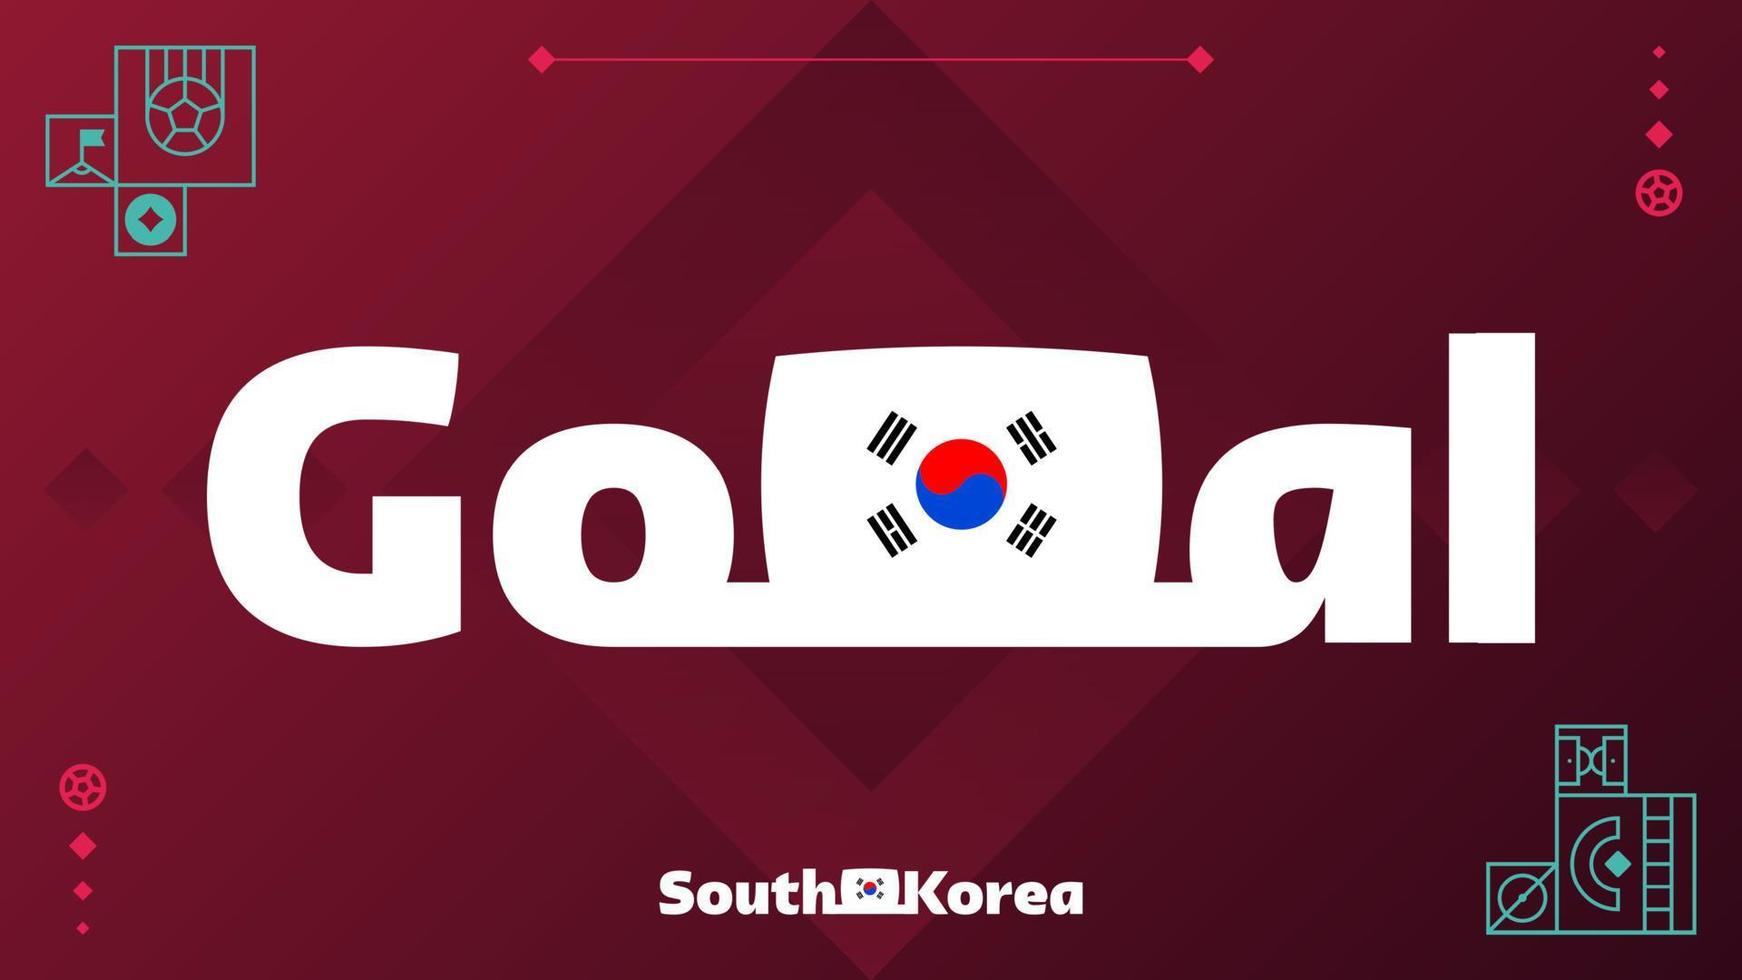 söder korea flagga med mål slogan på turnering bakgrund. värld fotboll 2022 vektor illustration